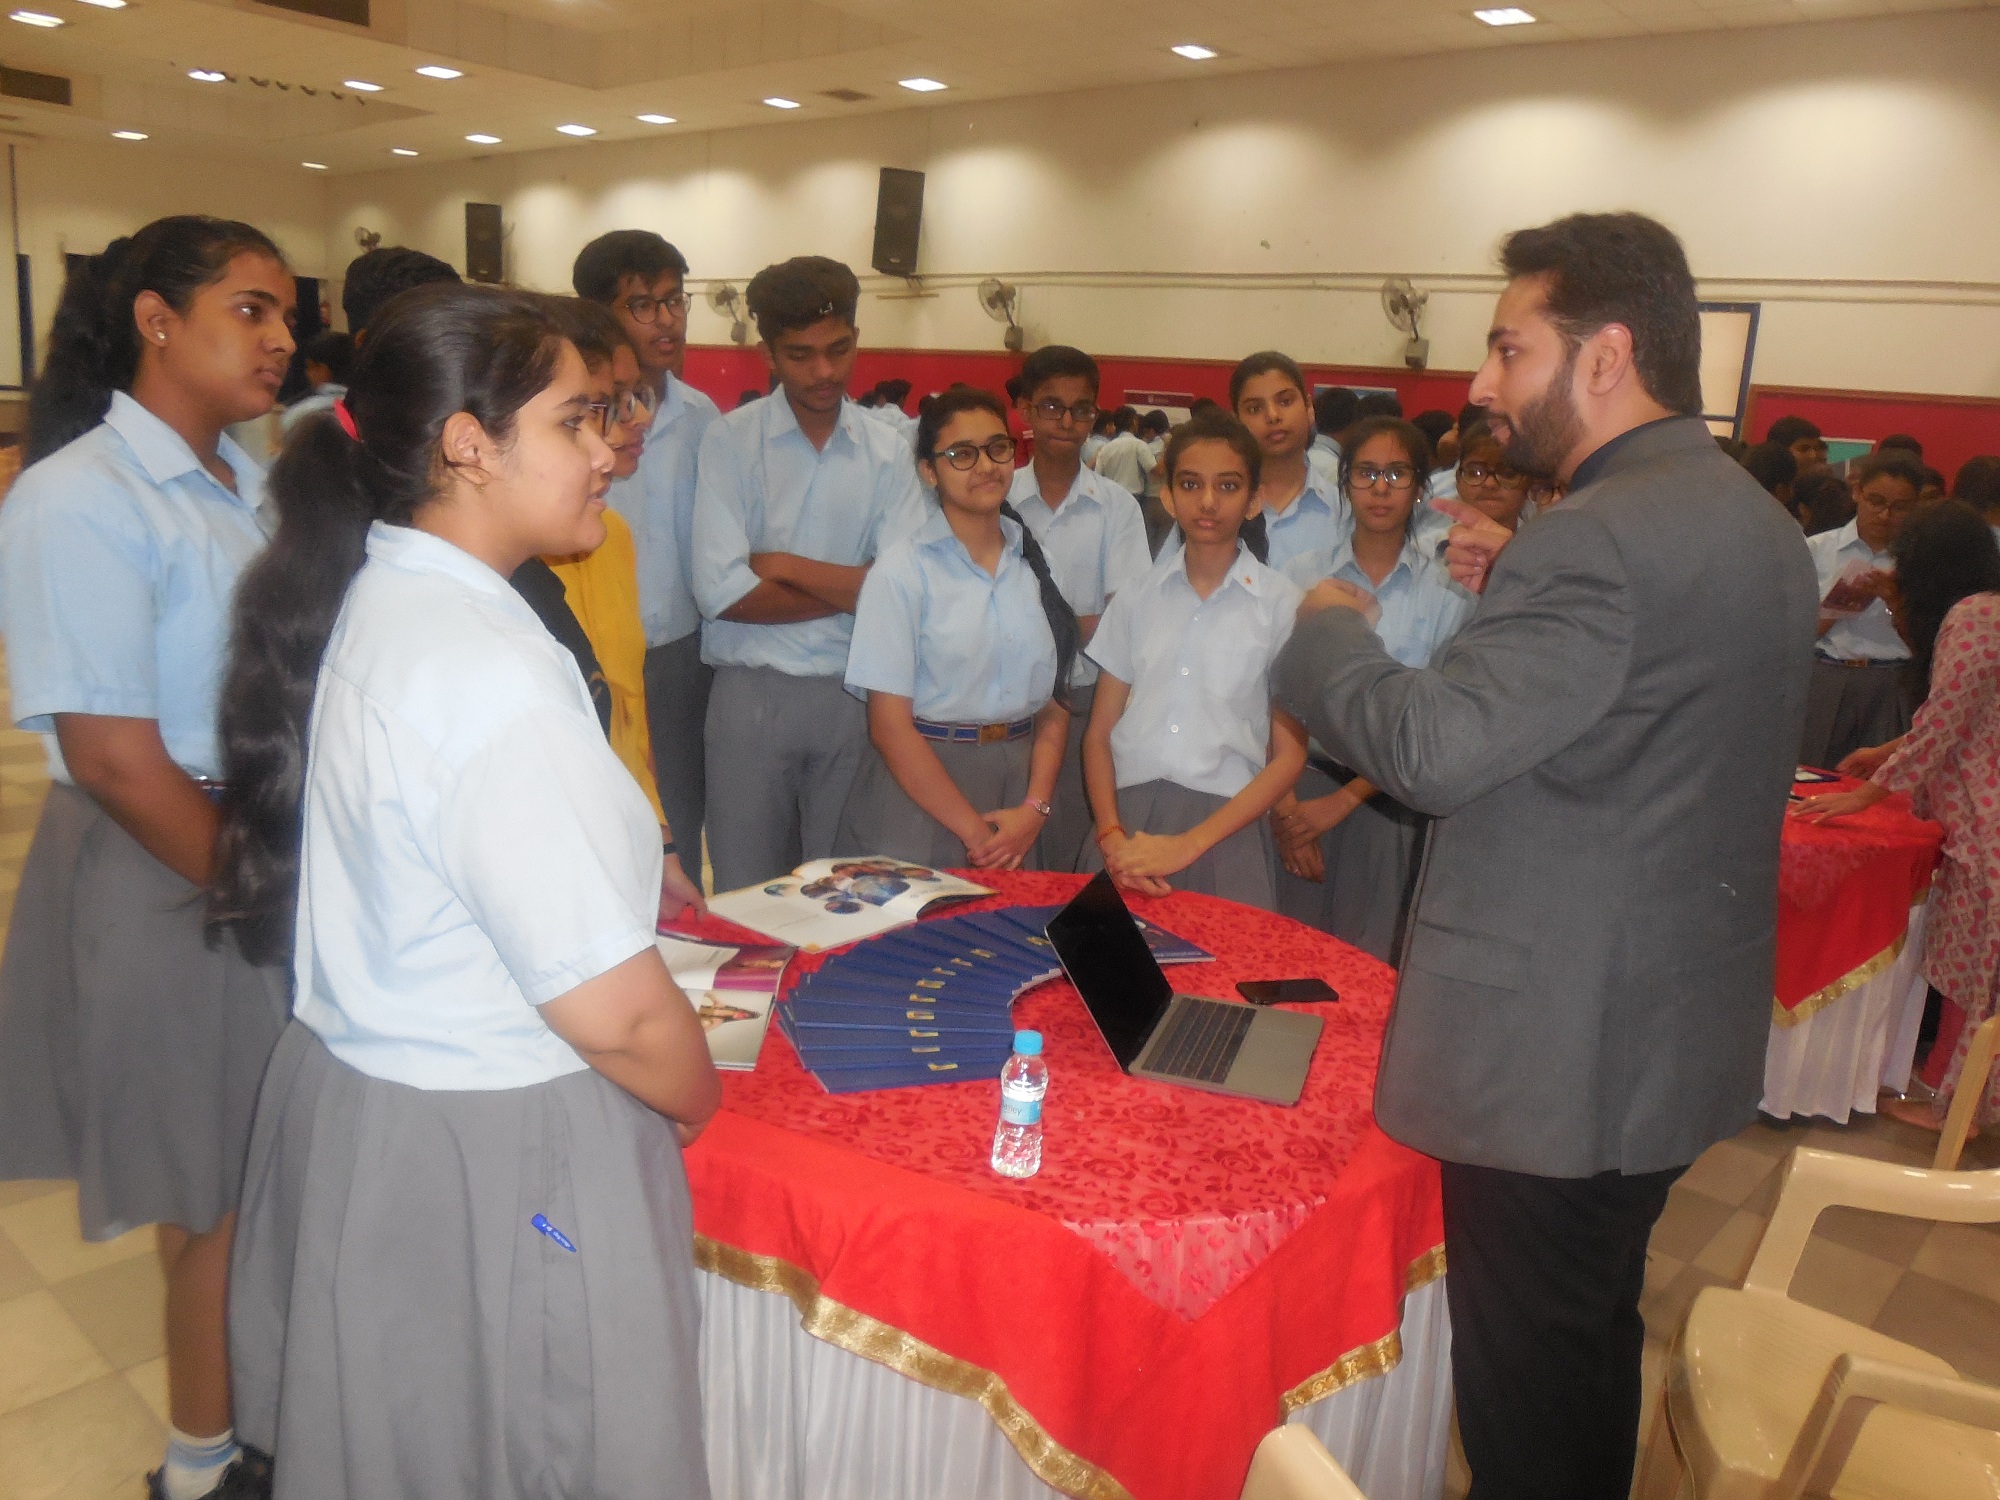 Education Fair held at Sanskar School